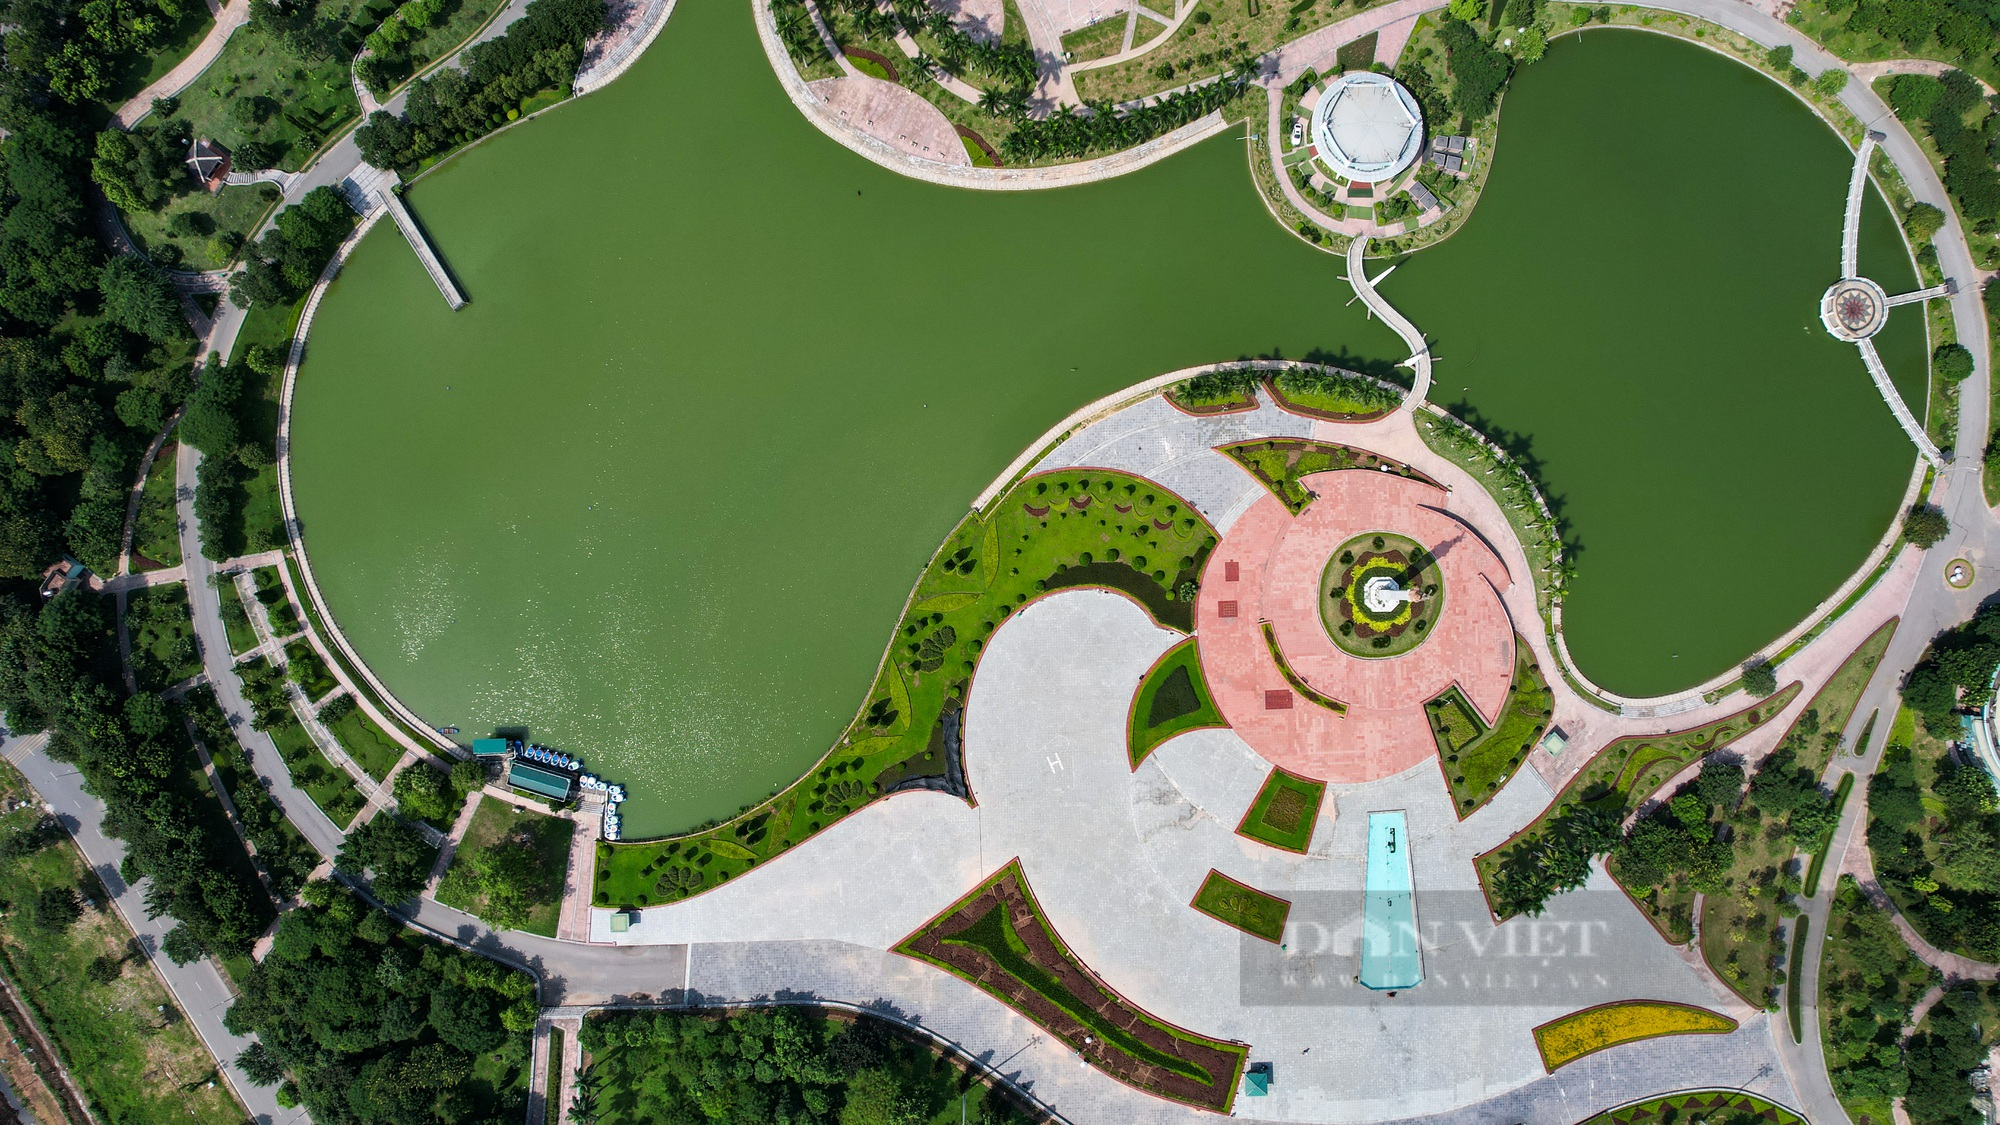 Hình ảnh công viên hiện đại nhất Hà Nội một thời, sau hơn 10 năm đưa vào sử dụng  - Ảnh 3.